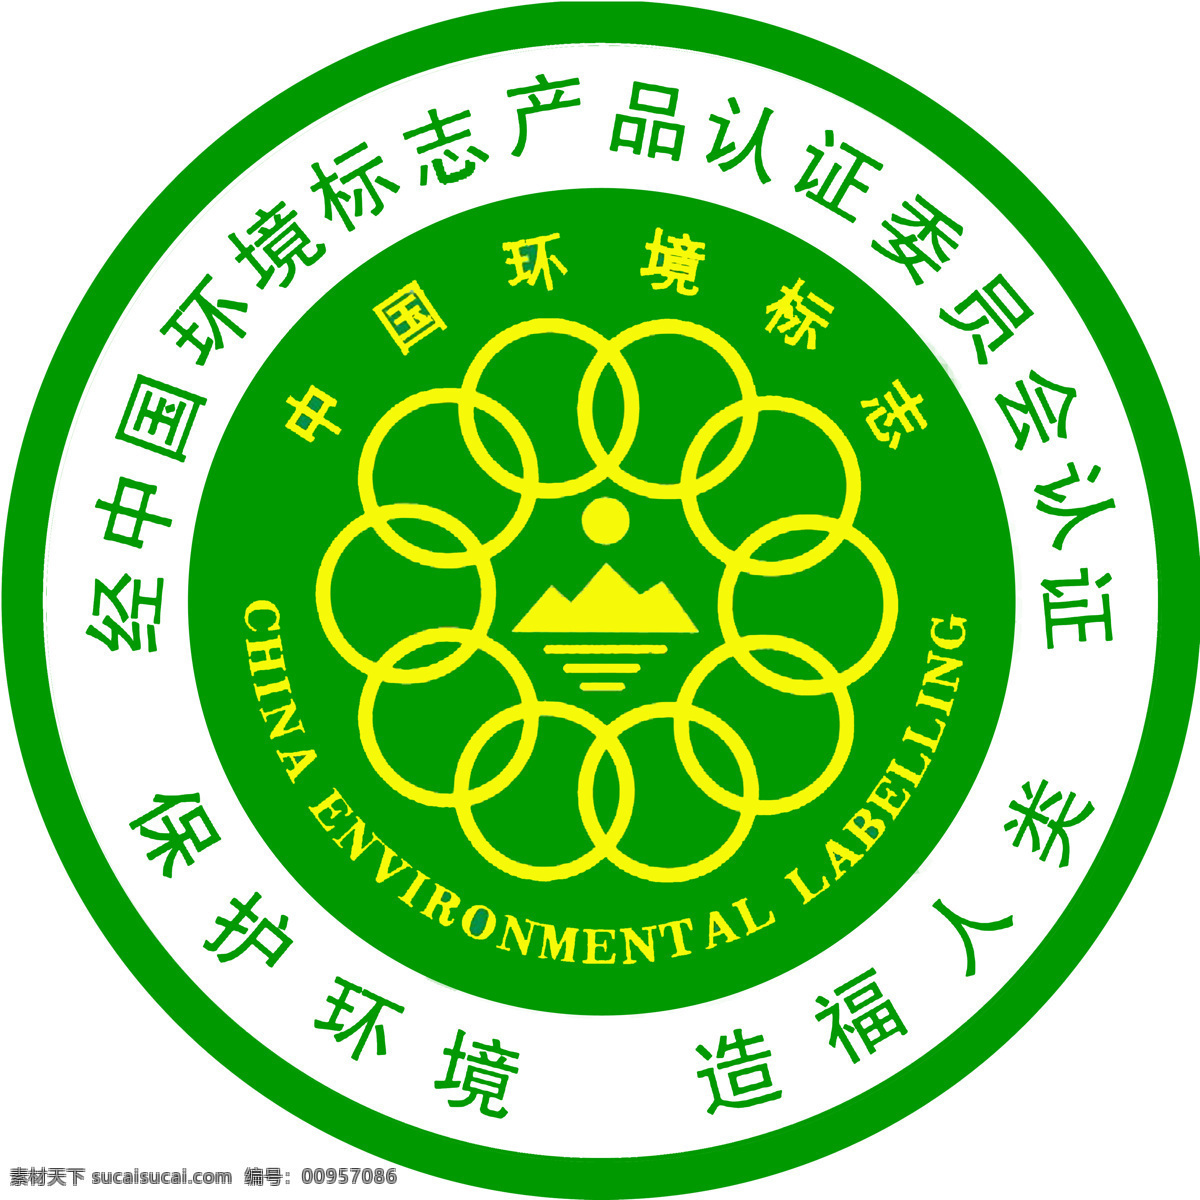 中国 环境标志 标志 环保标志 环境